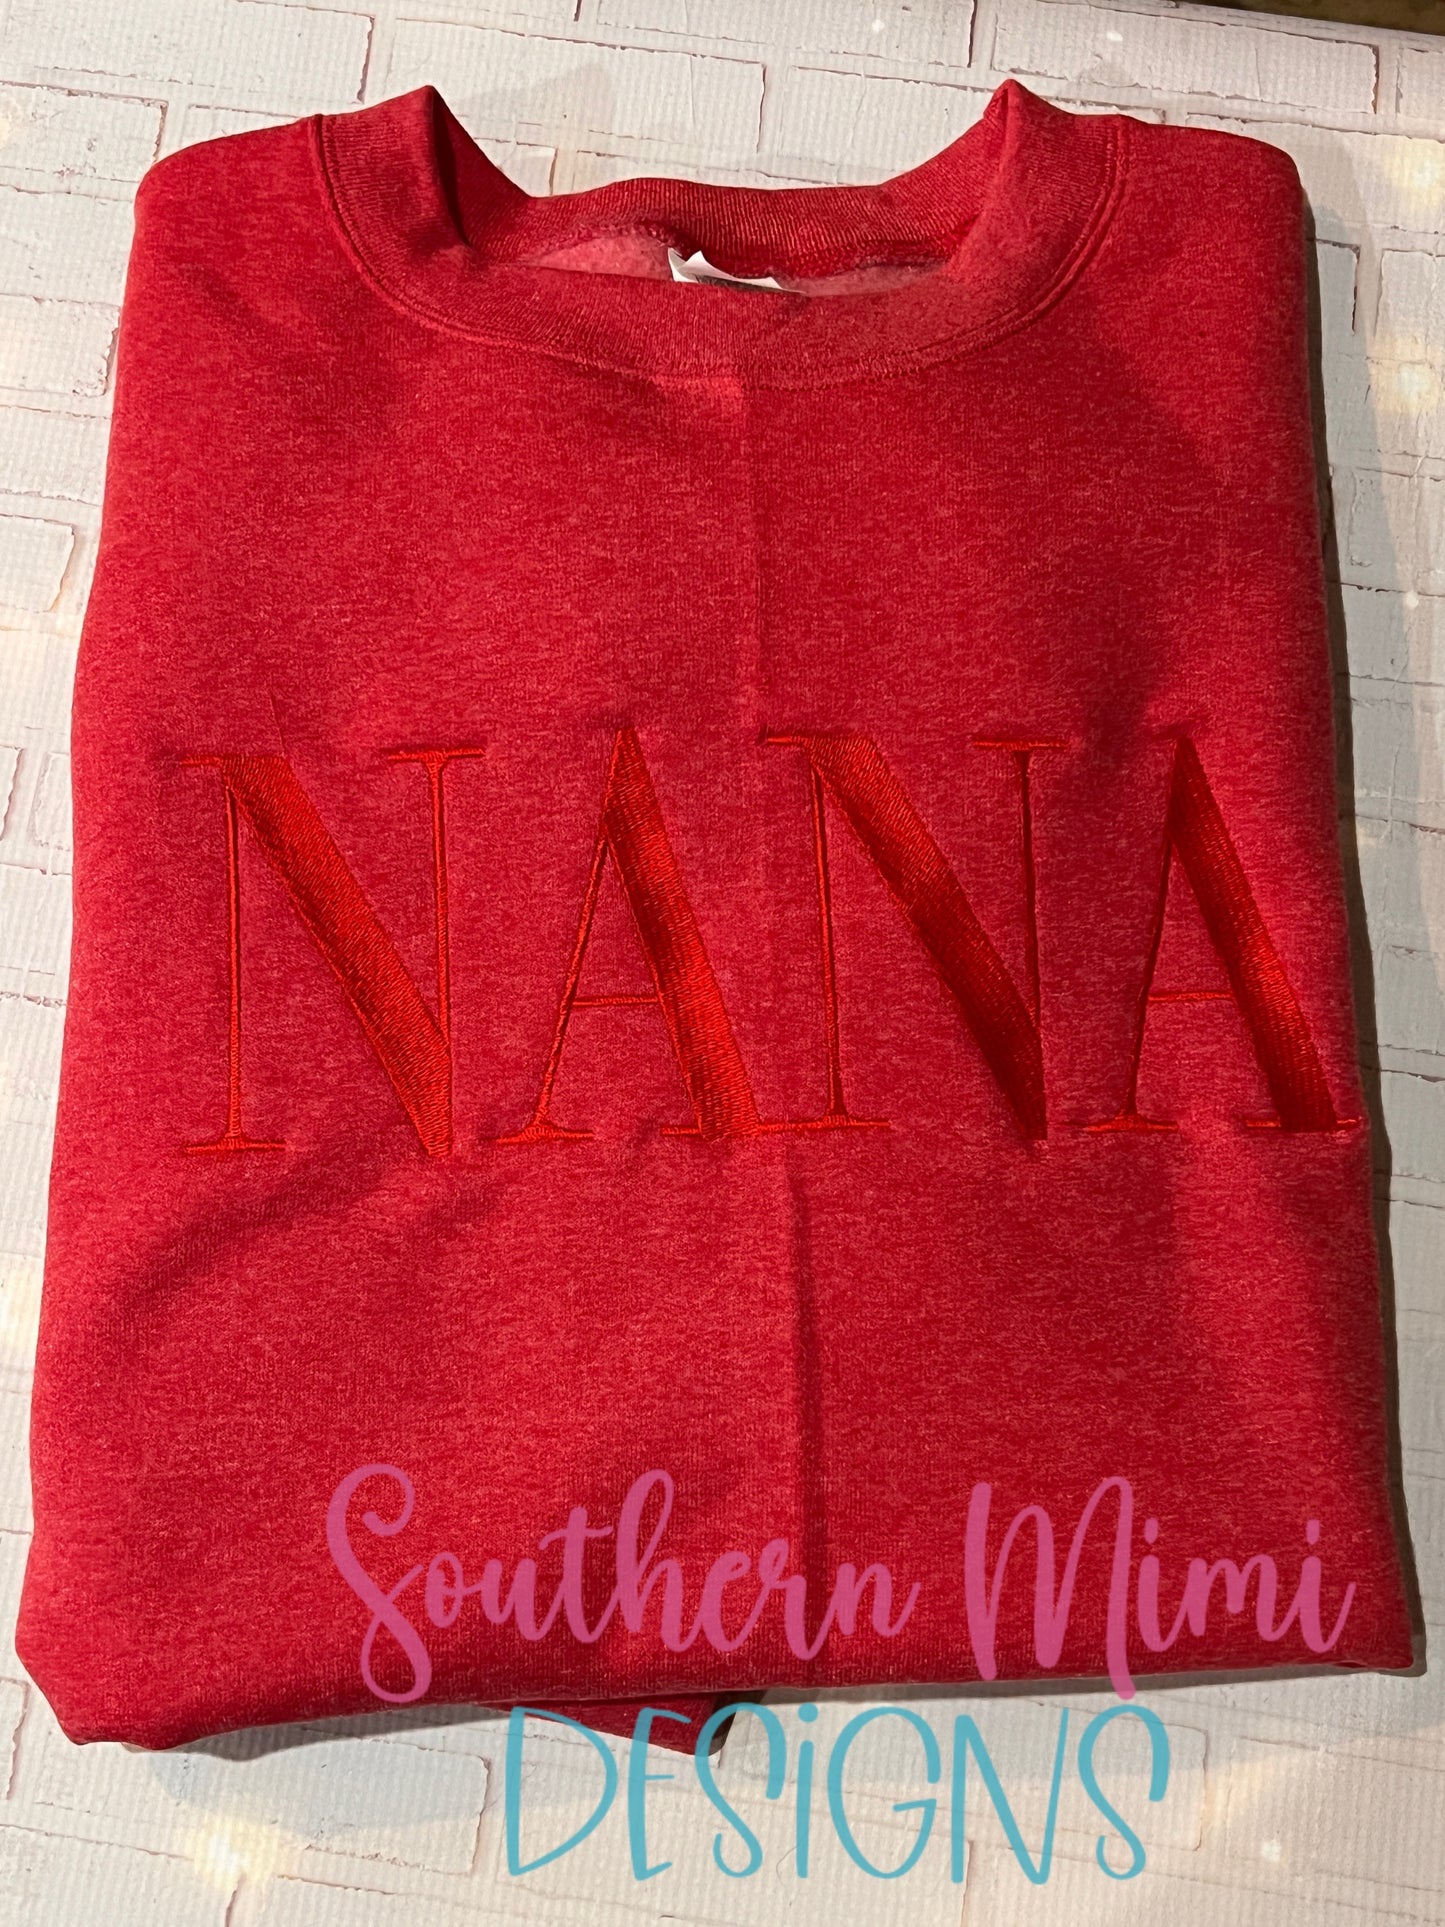 Name embroidery sweatshirt